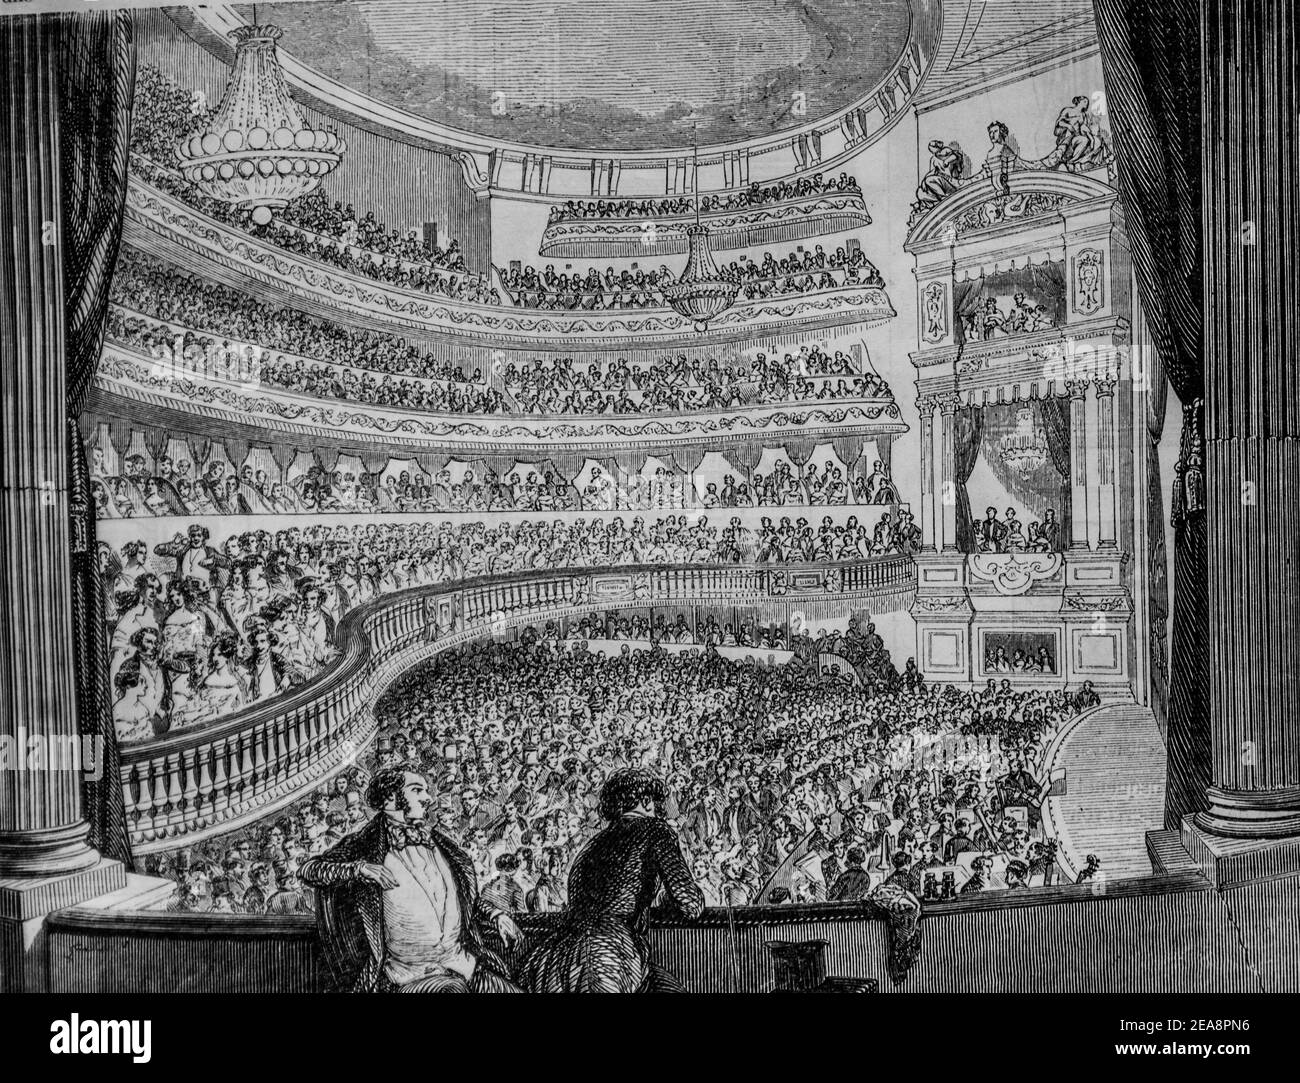 théâtre lyrique, tableau de paris par edmond texier, éditeur paulin et le chevalier 1852 Banque D'Images